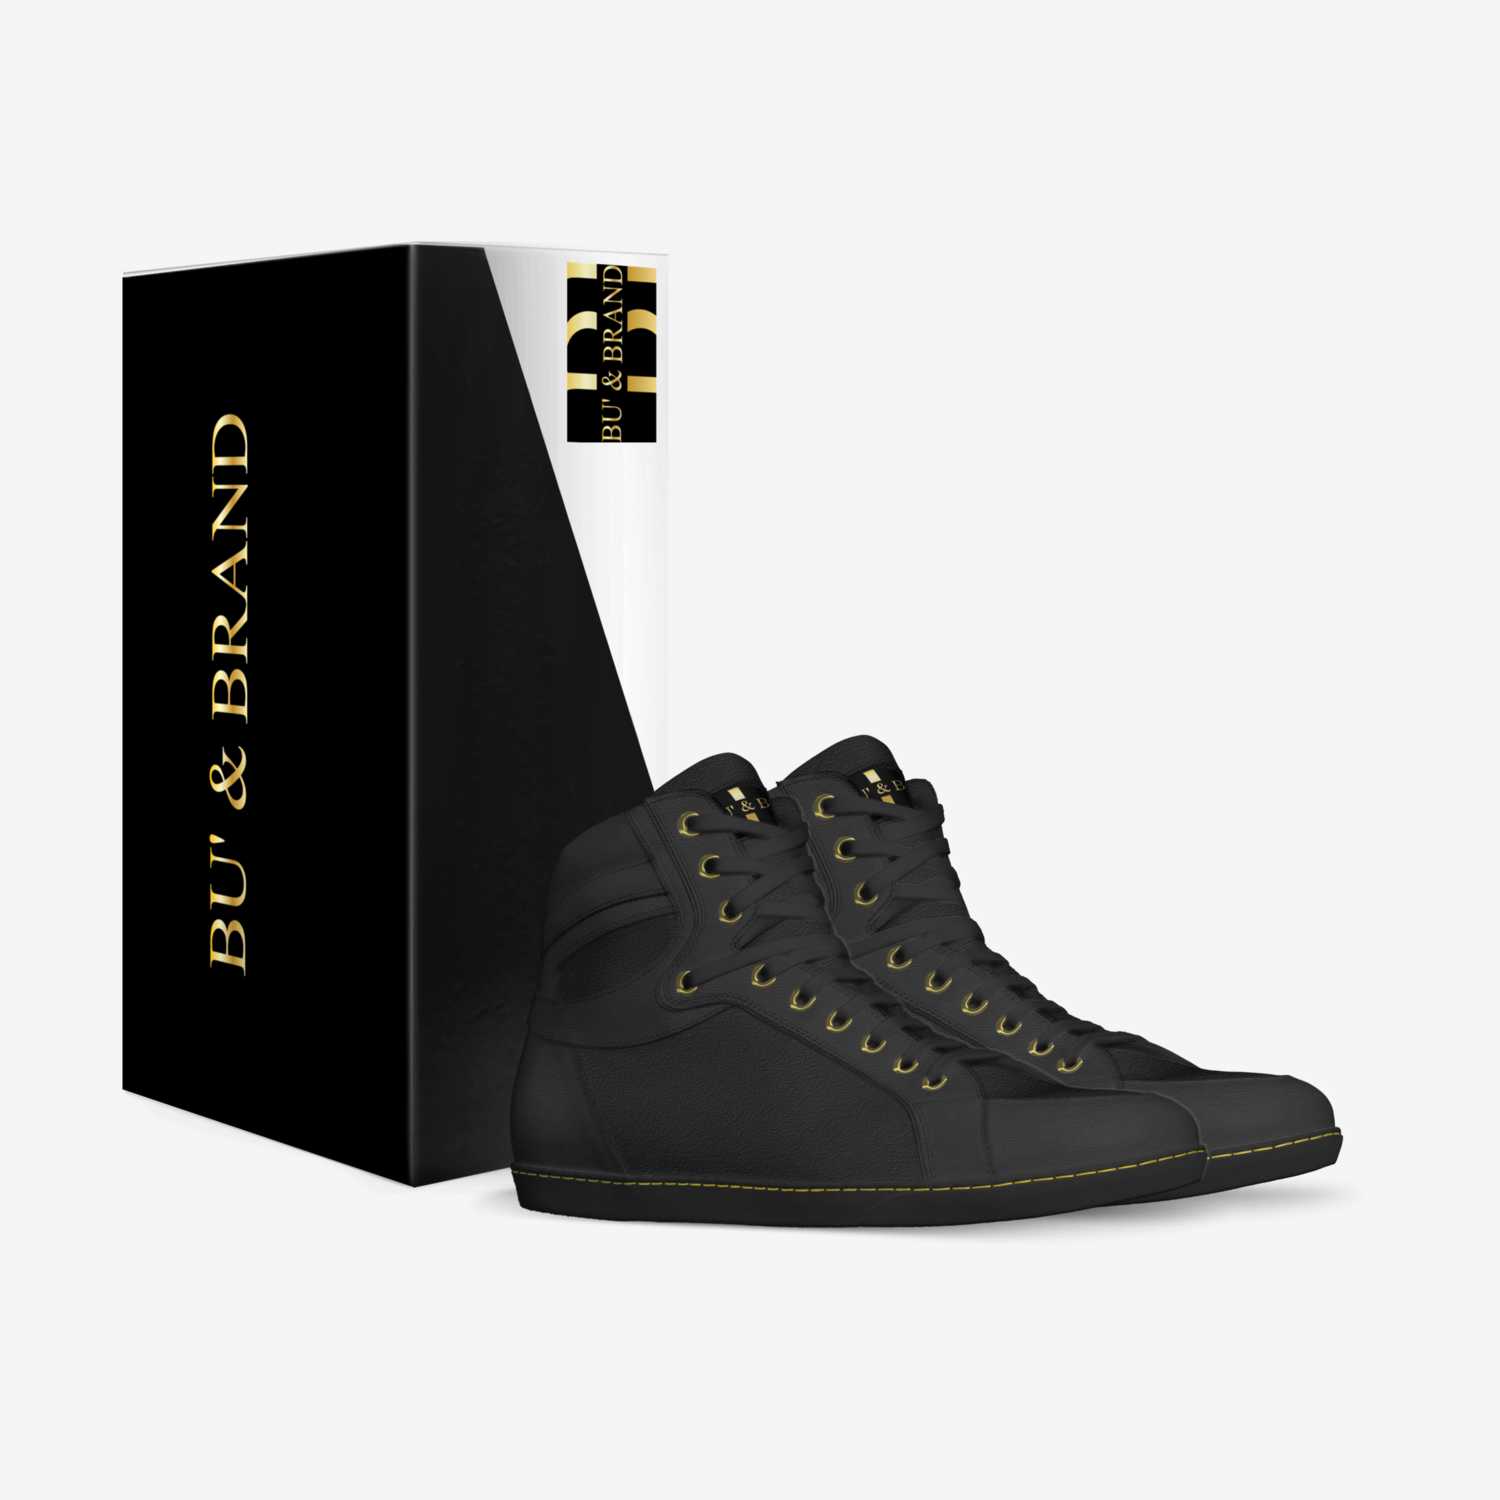 Dark knight-BGo custom made in Italy shoes by X Bu Italy | Box view